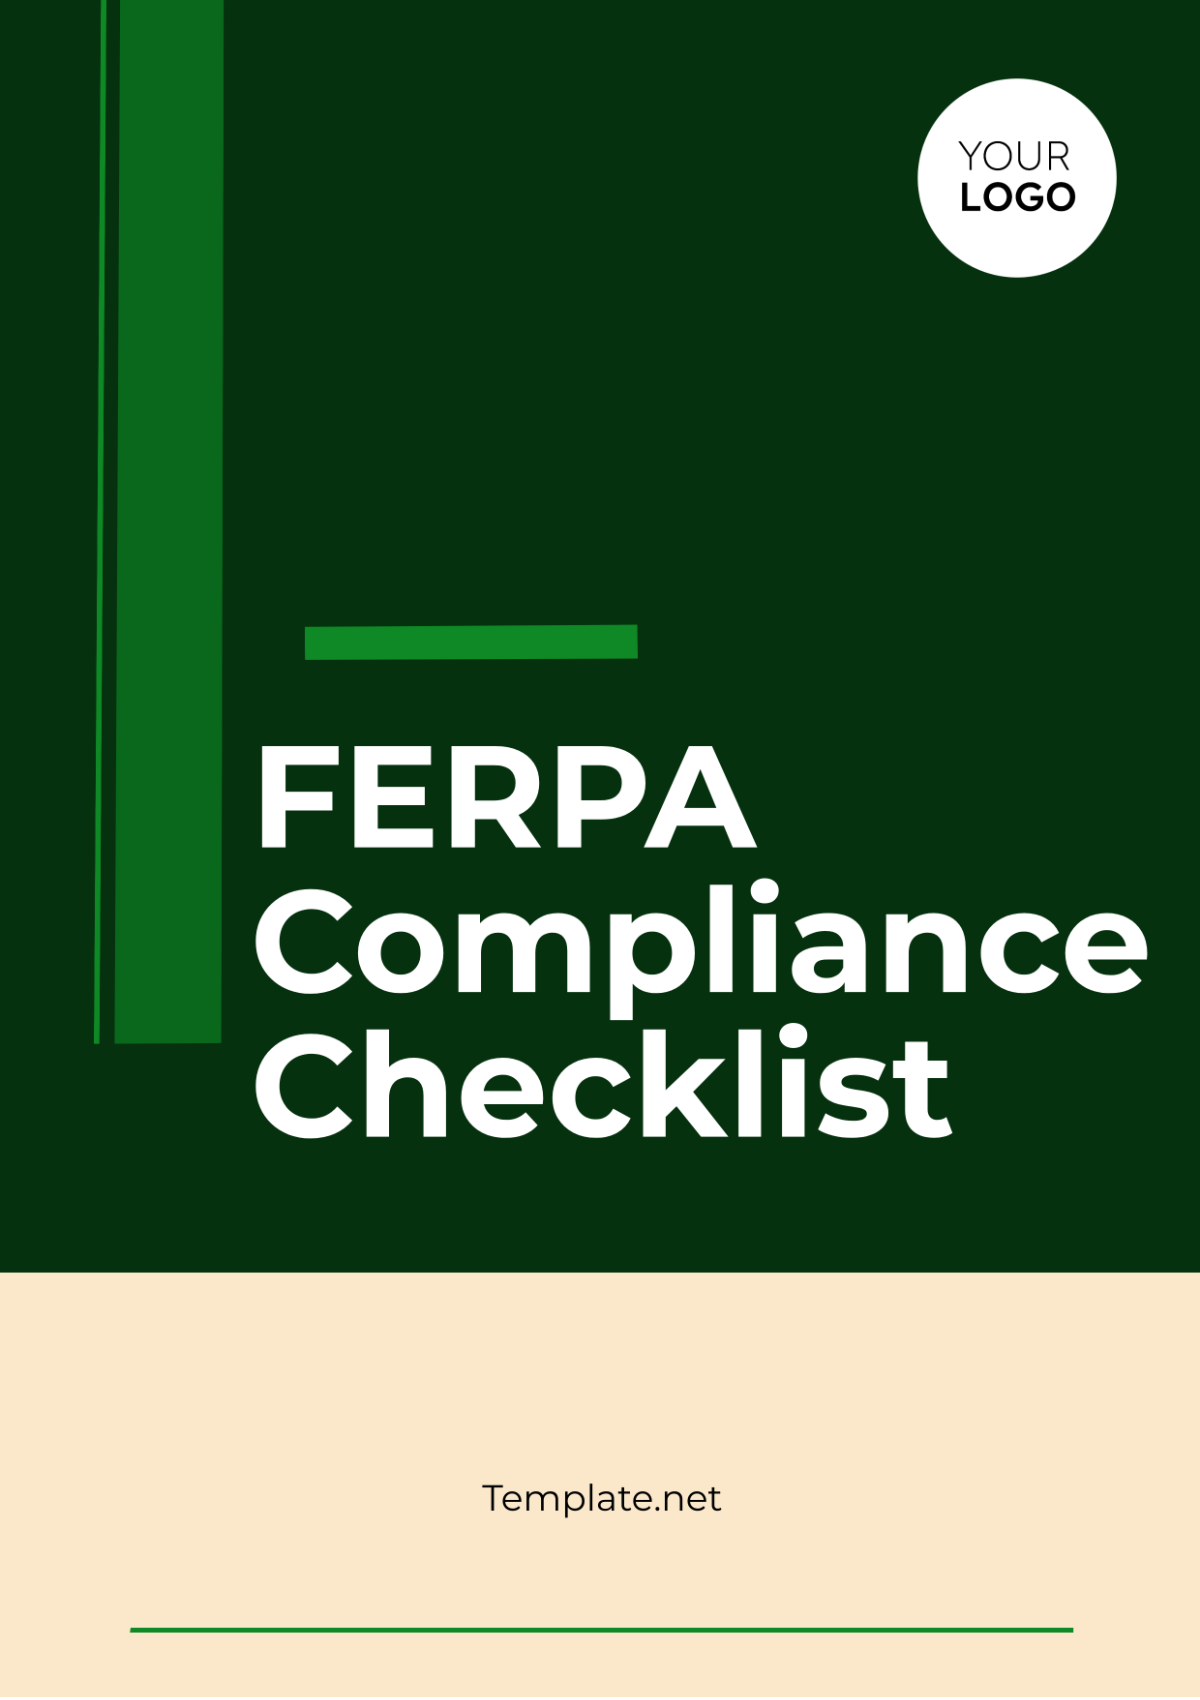 FERPA Compliance Checklist Template